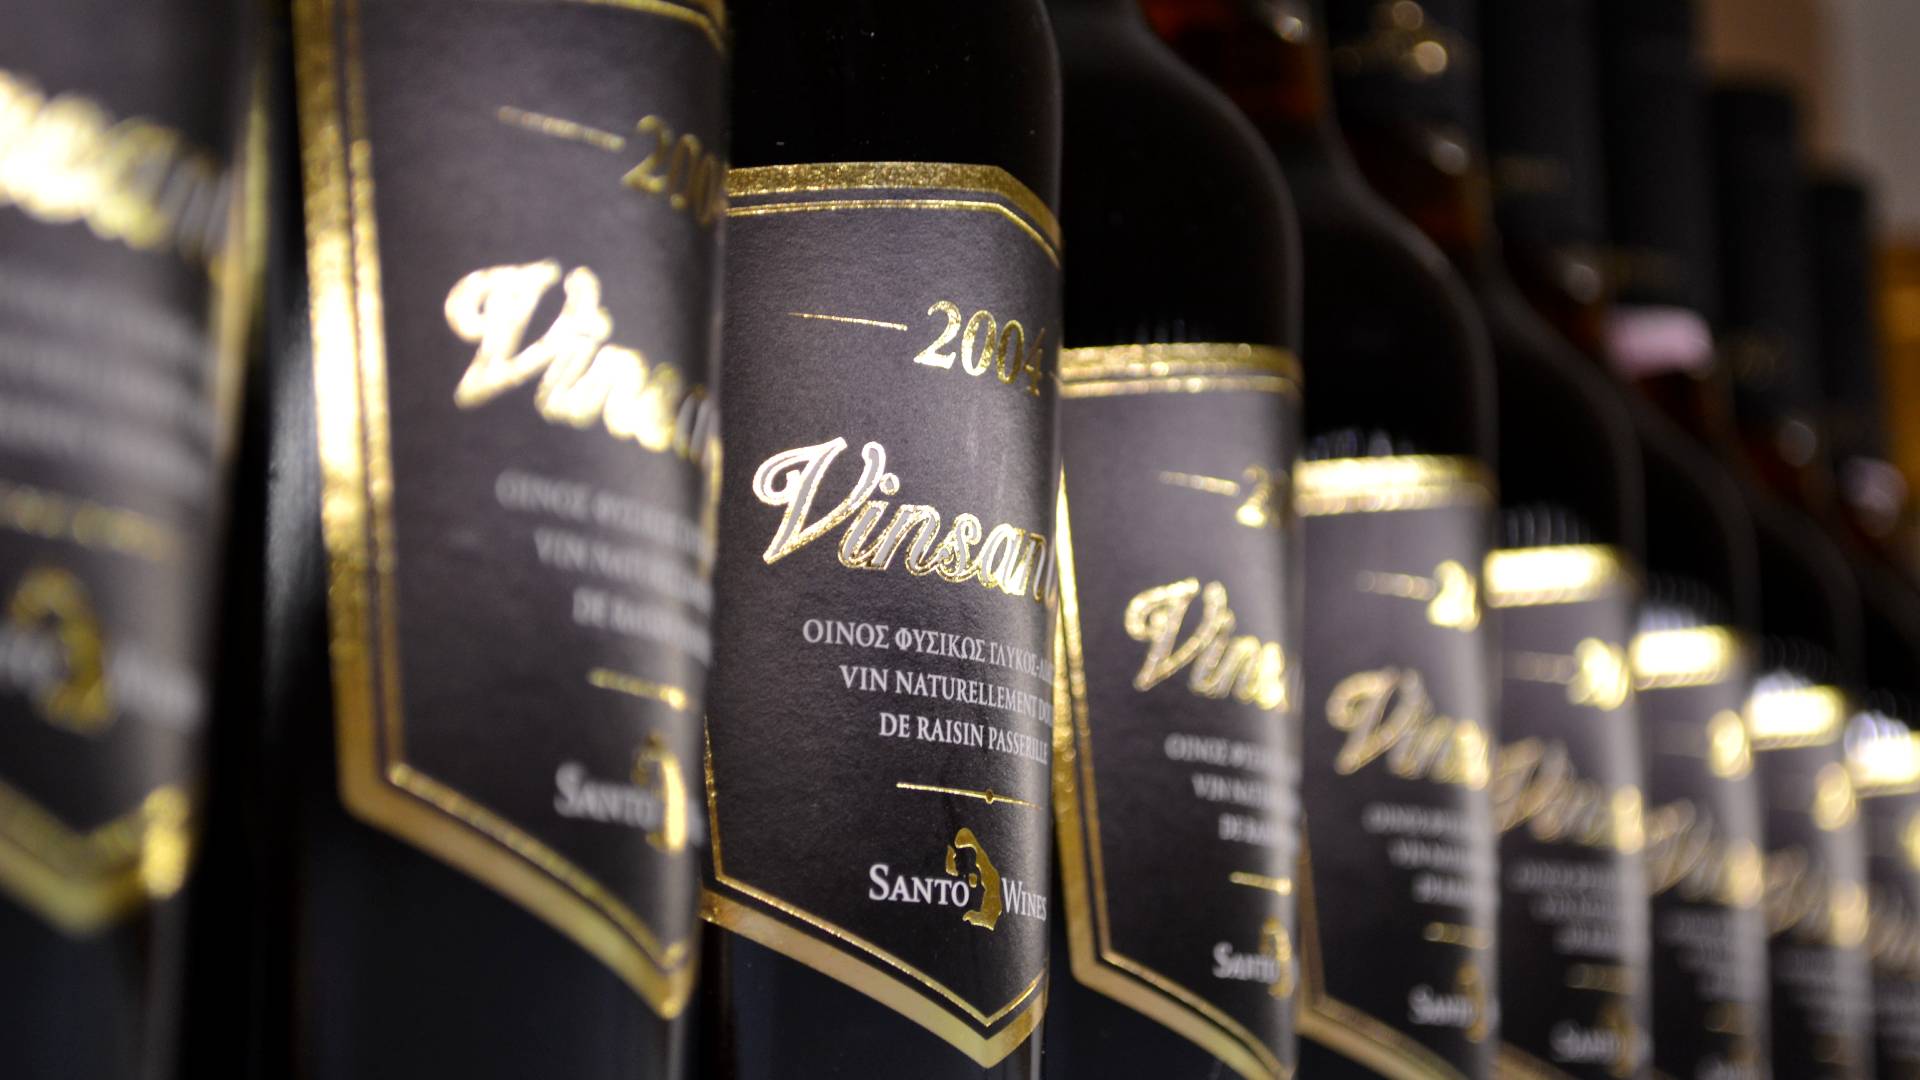 Vinsanto wijn uit Santorini